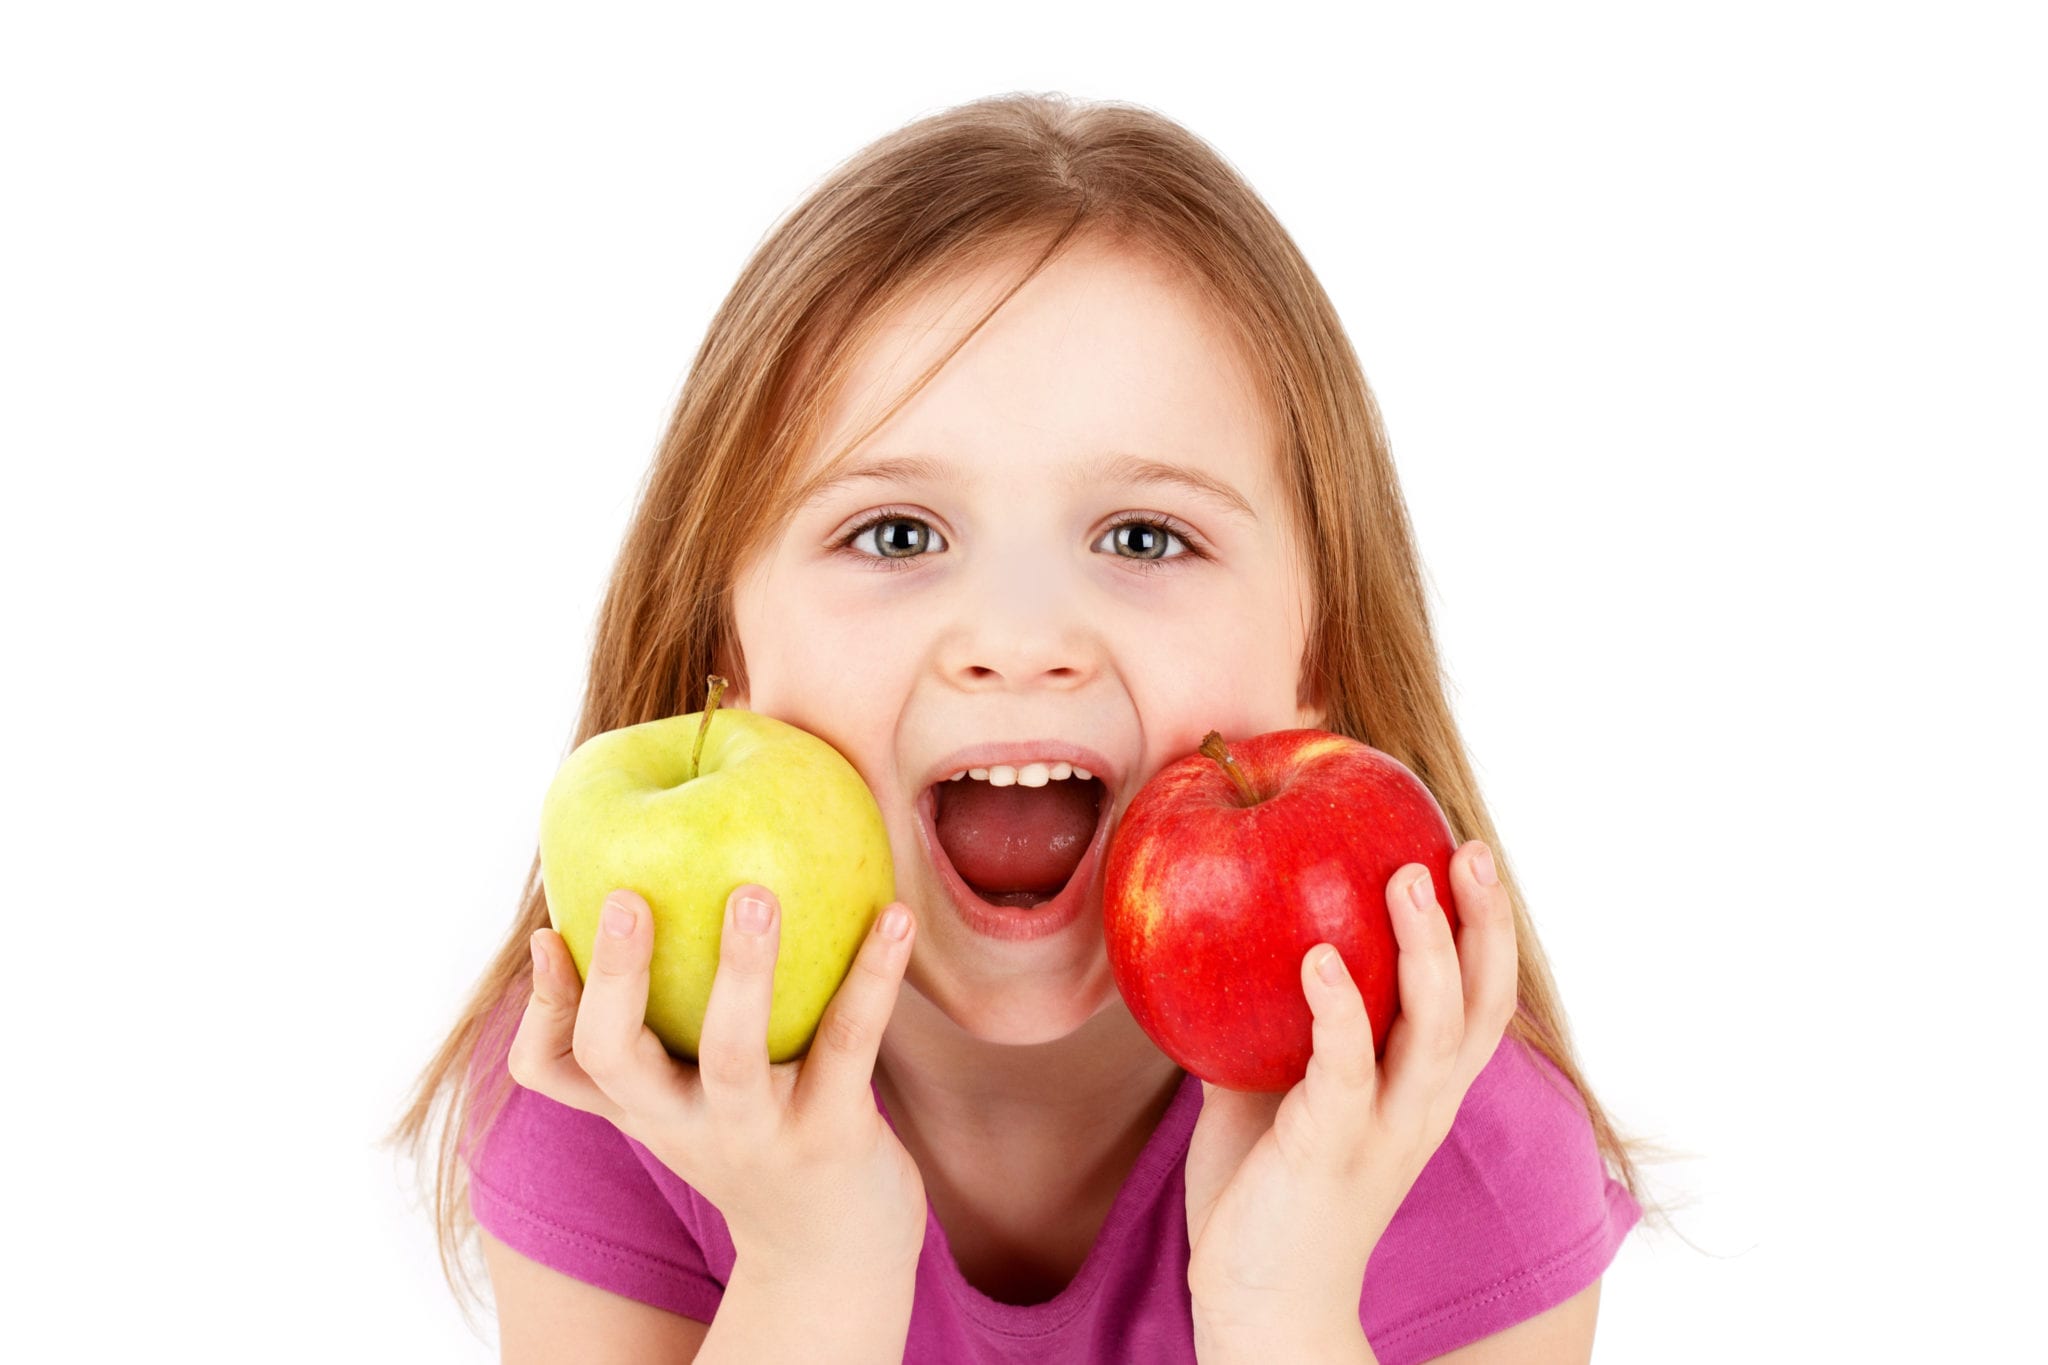 Funny little girl eating apples